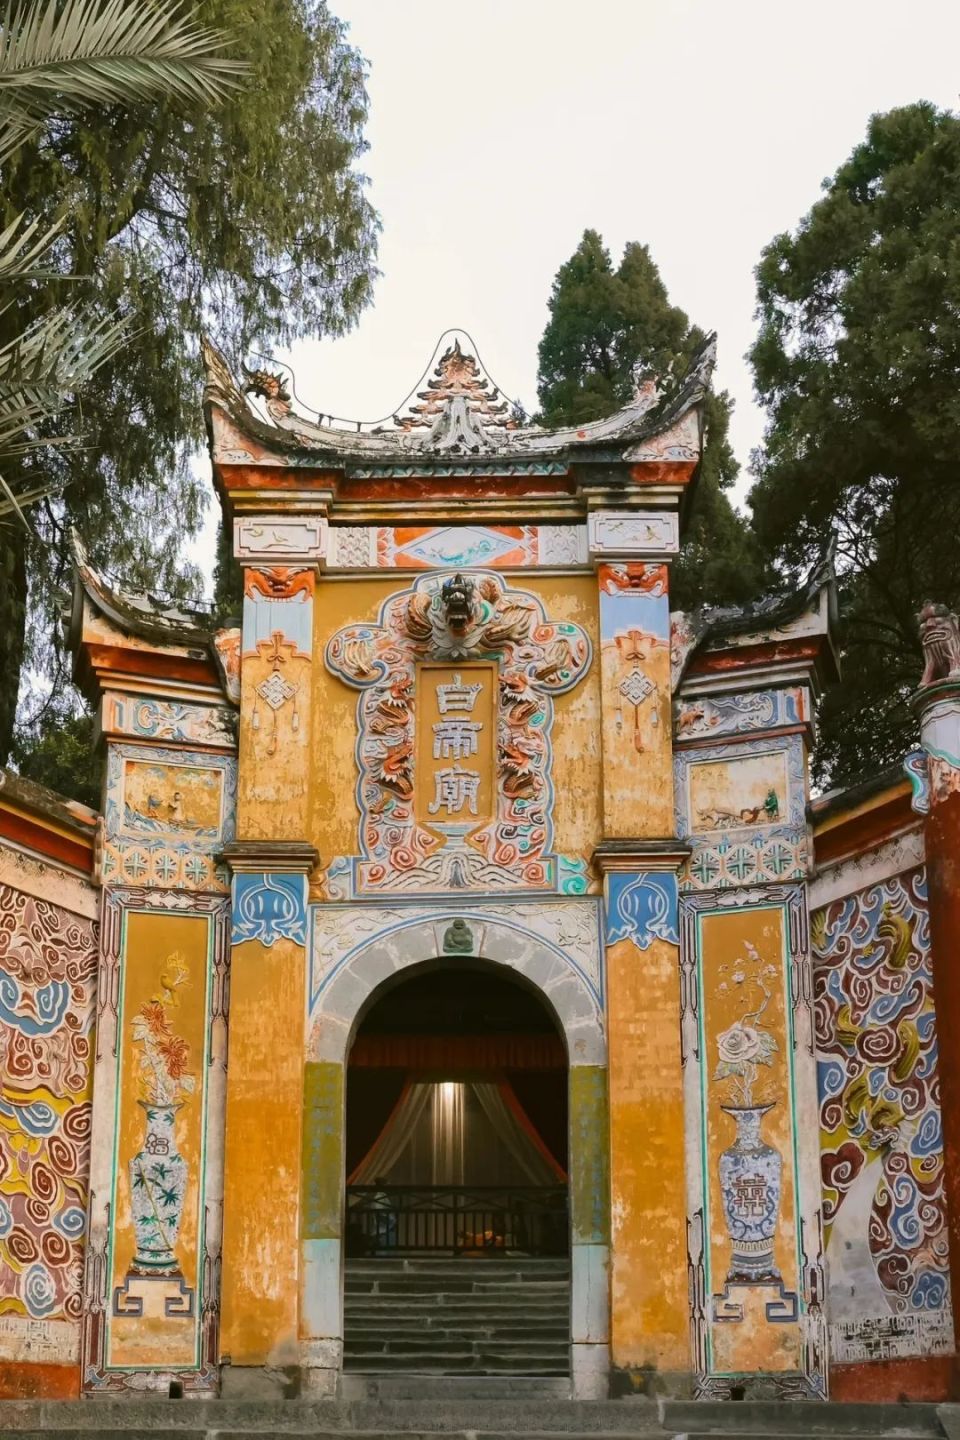 后沿步道上山,行至装饰着繁复彩绘灰塑的白帝城大门,可远望长江与夔门